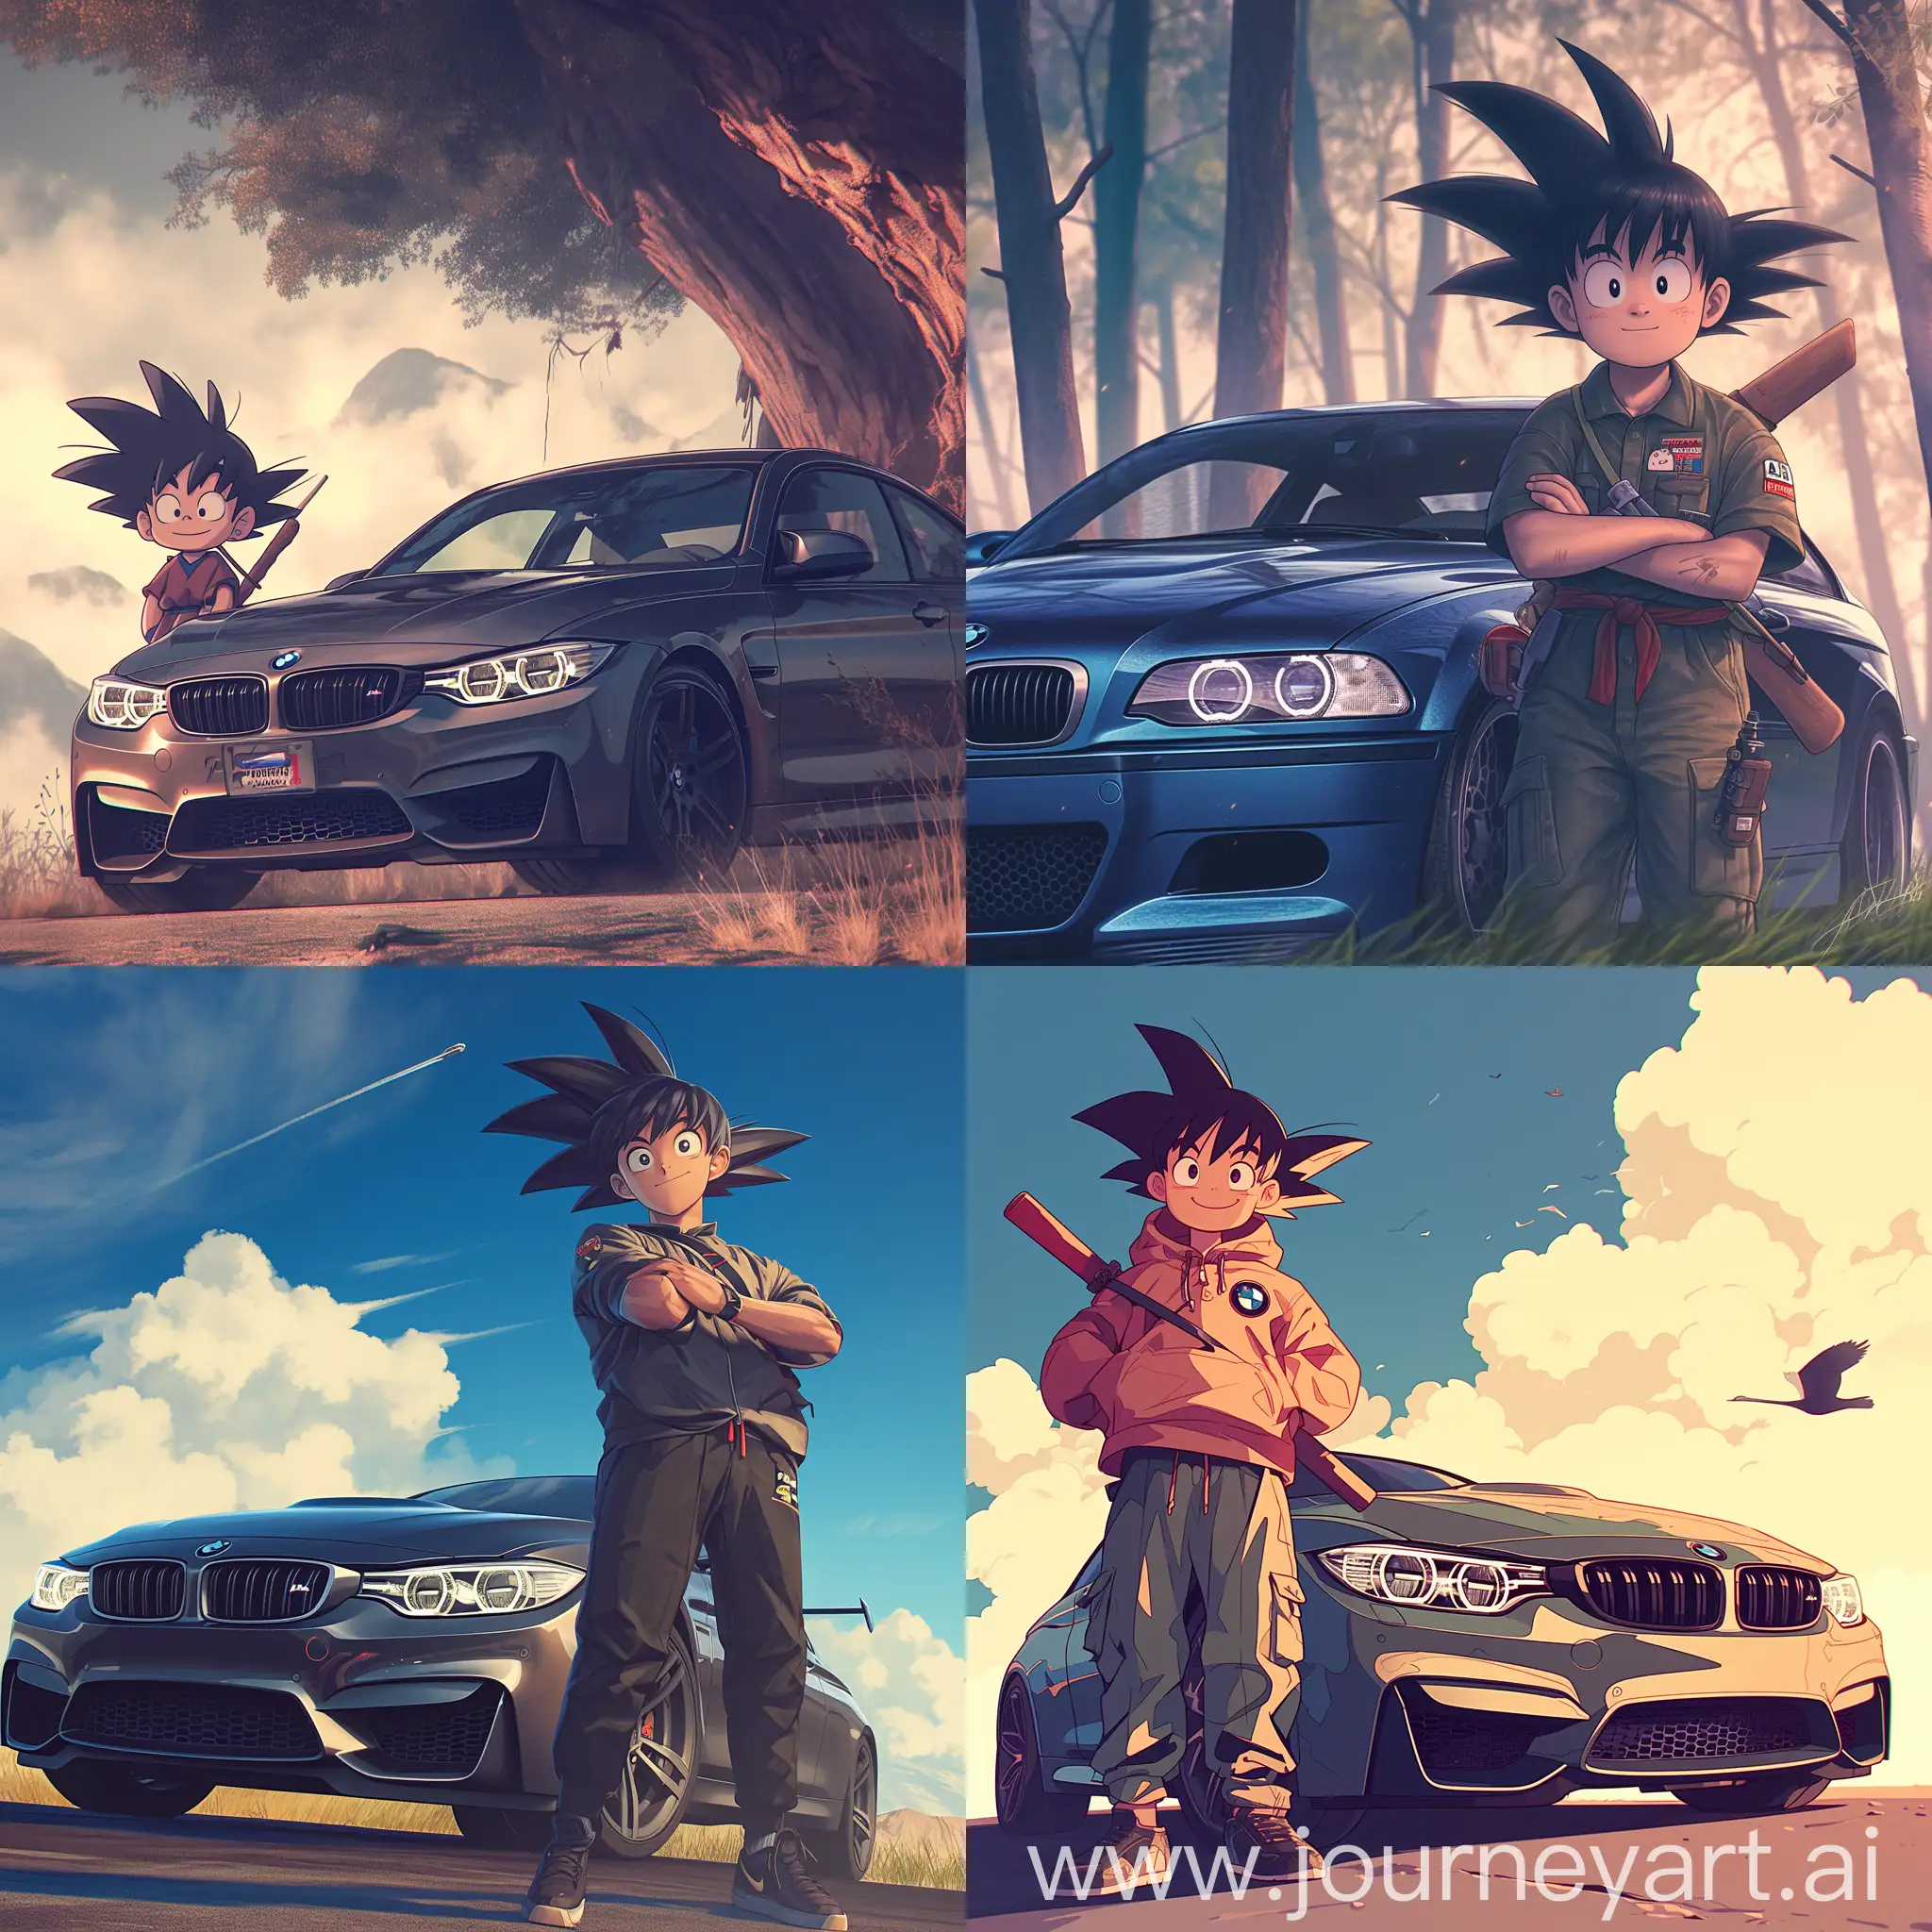 Goku-in-Studio-Ghibli-Style-with-BMW-M4